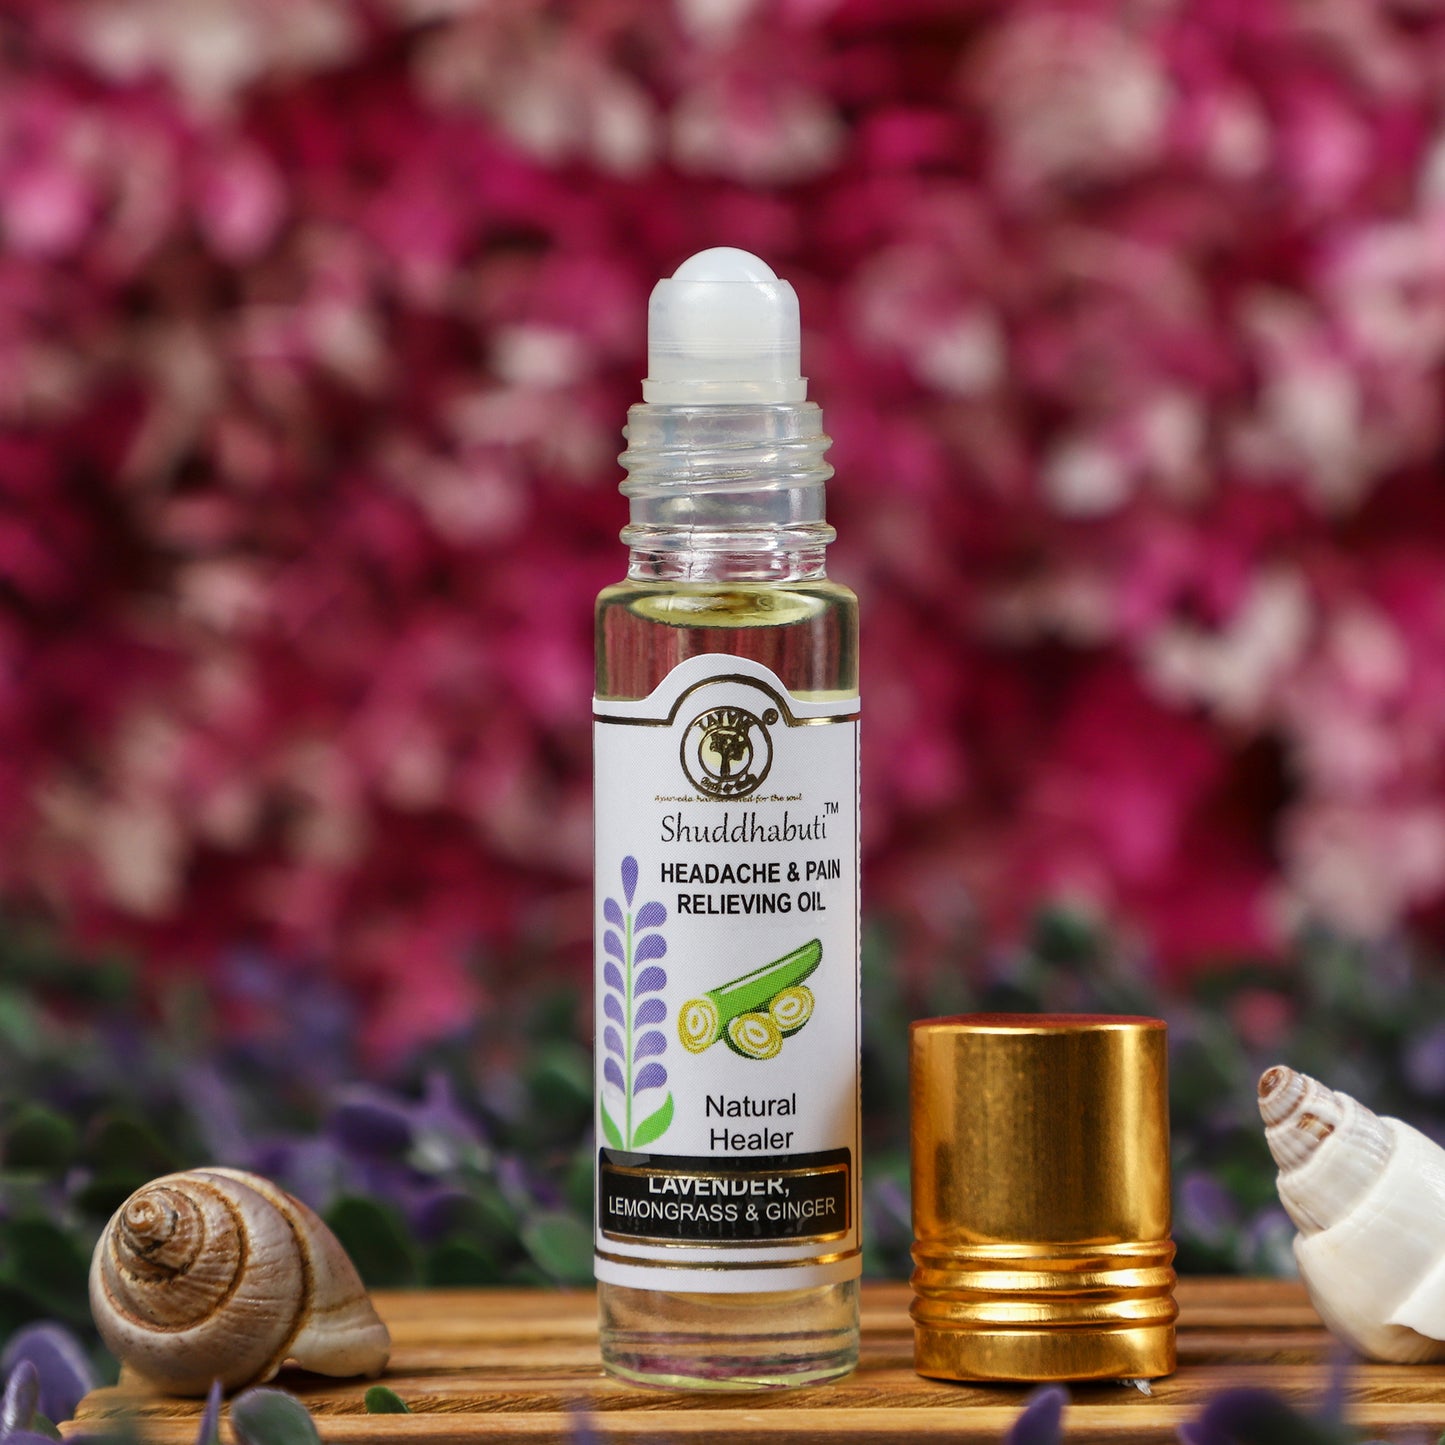 Shuddhabuti Lavender, Lemongrass & Ginger - Headache & Pain Relieving Oil - 10 ML